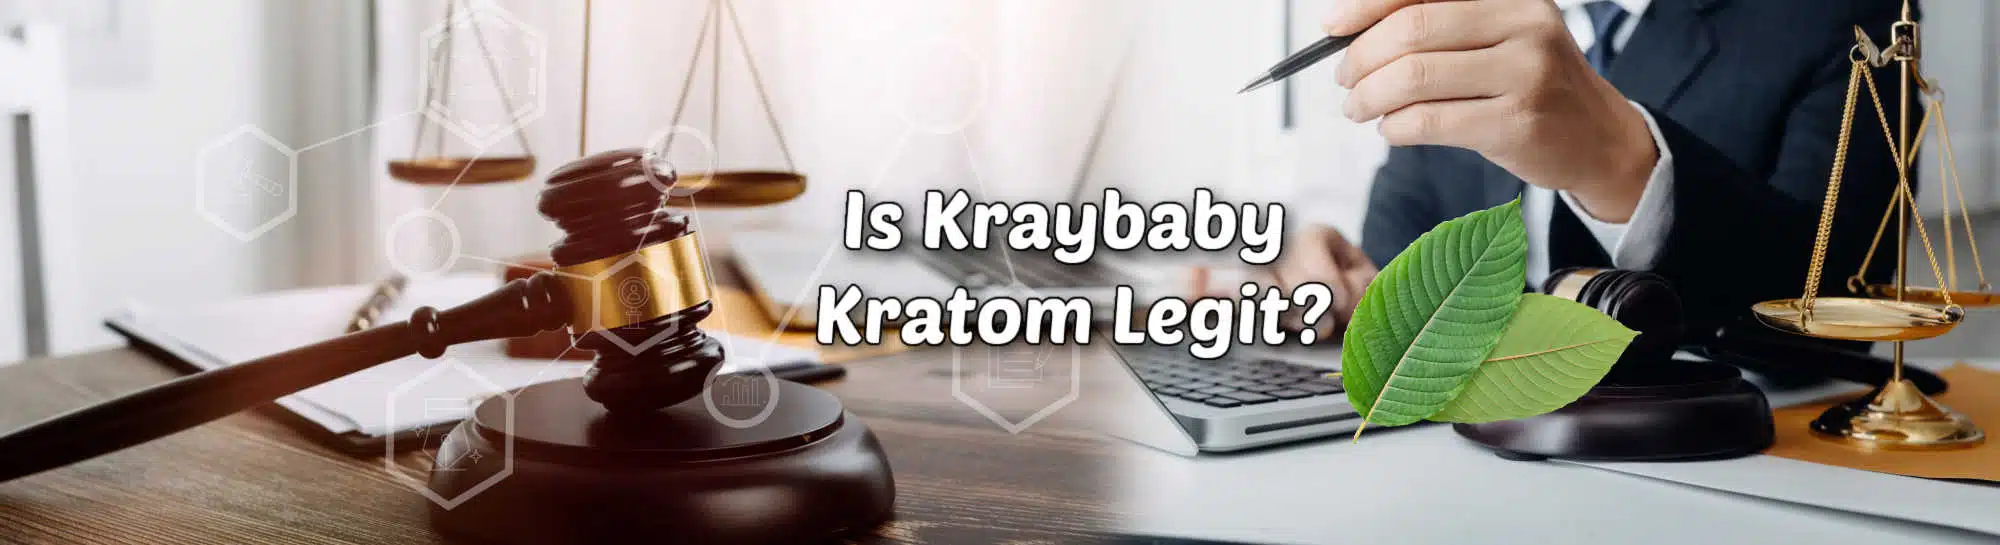 image of is kraybaby kratom legit